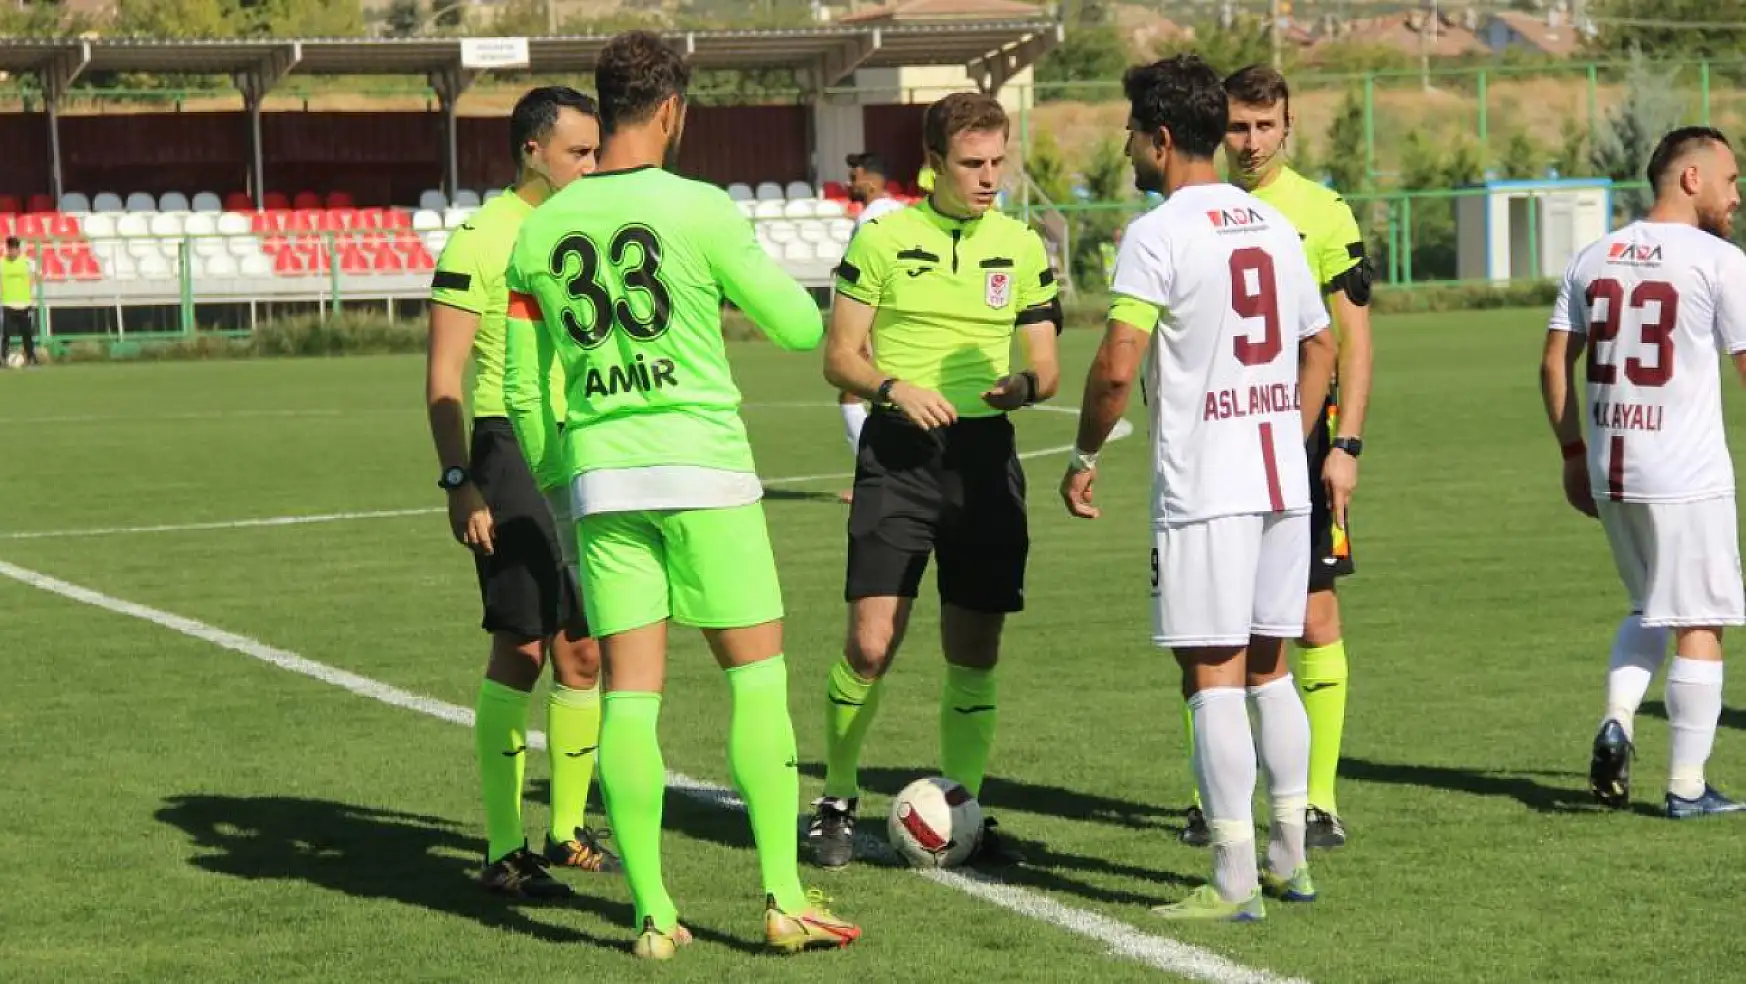 Sivas 4 Eylül Futbol - 23 Elazığ FK ZTK maçını Konyalı hakem yönetecek